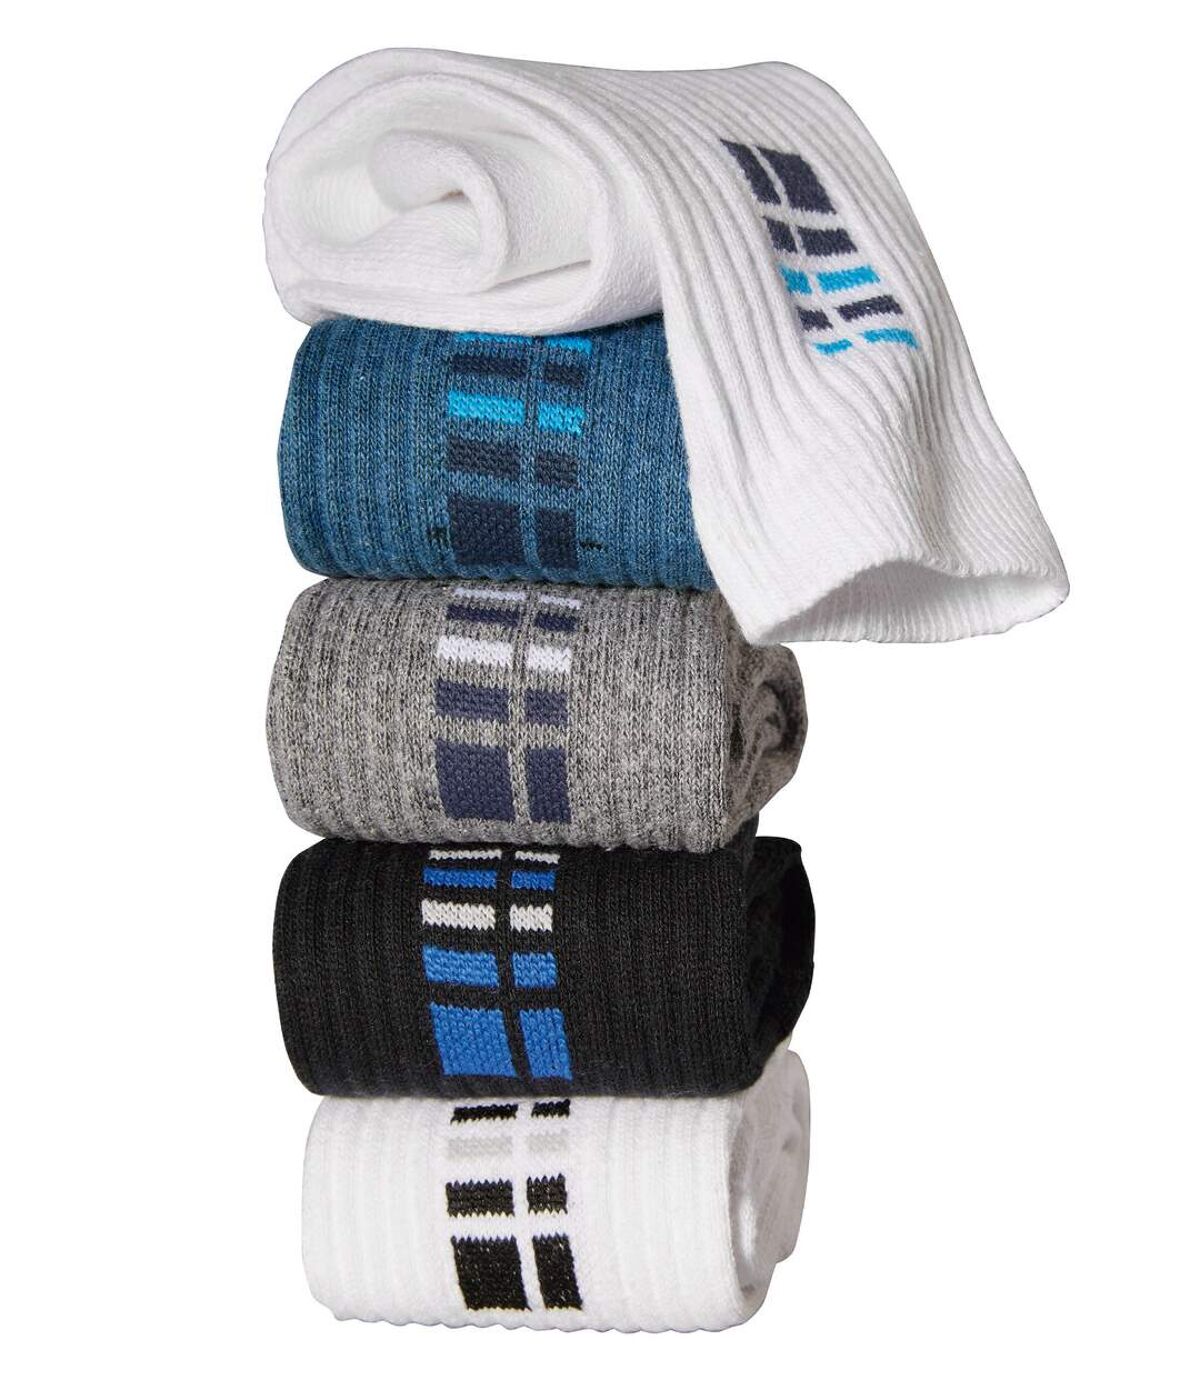 Pack of 5 Pairs of Men's Sports Socks - White Grey Indigo Black Atlas For Men